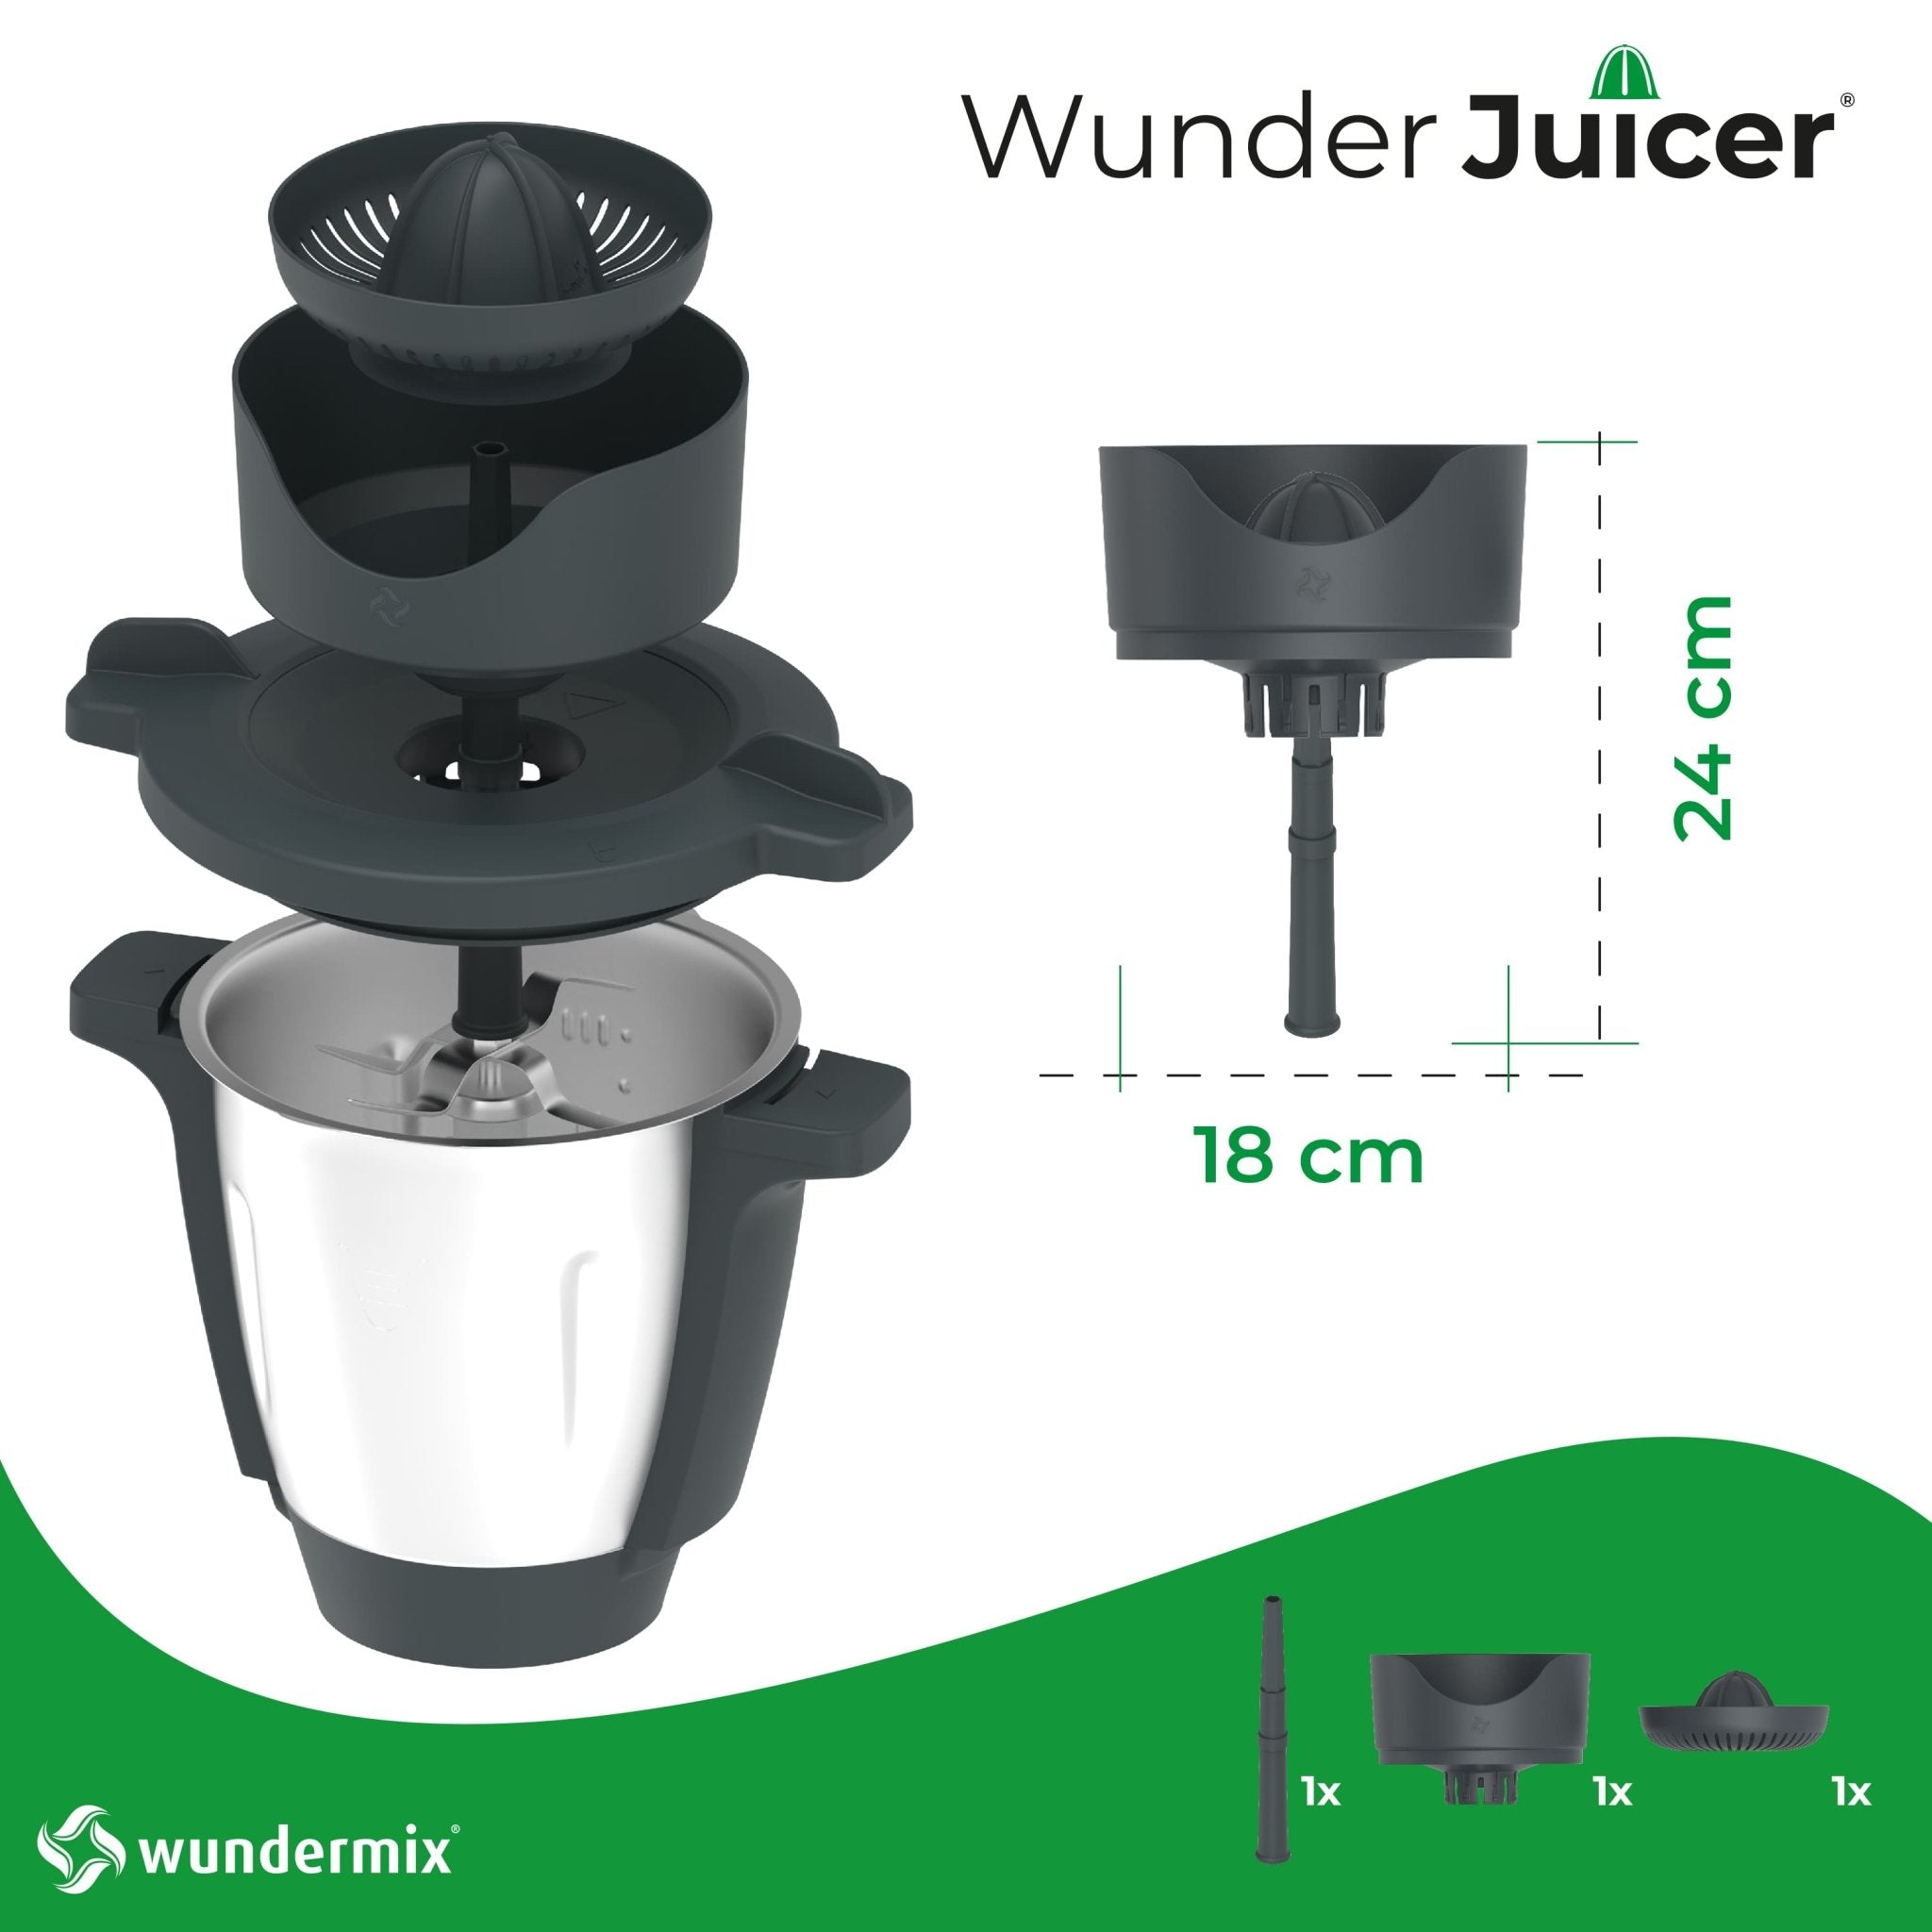 WunderJuicer® | Saftpresse für Monsieur Cuisine Connect, Trend und Smart - Wundermix GmbH